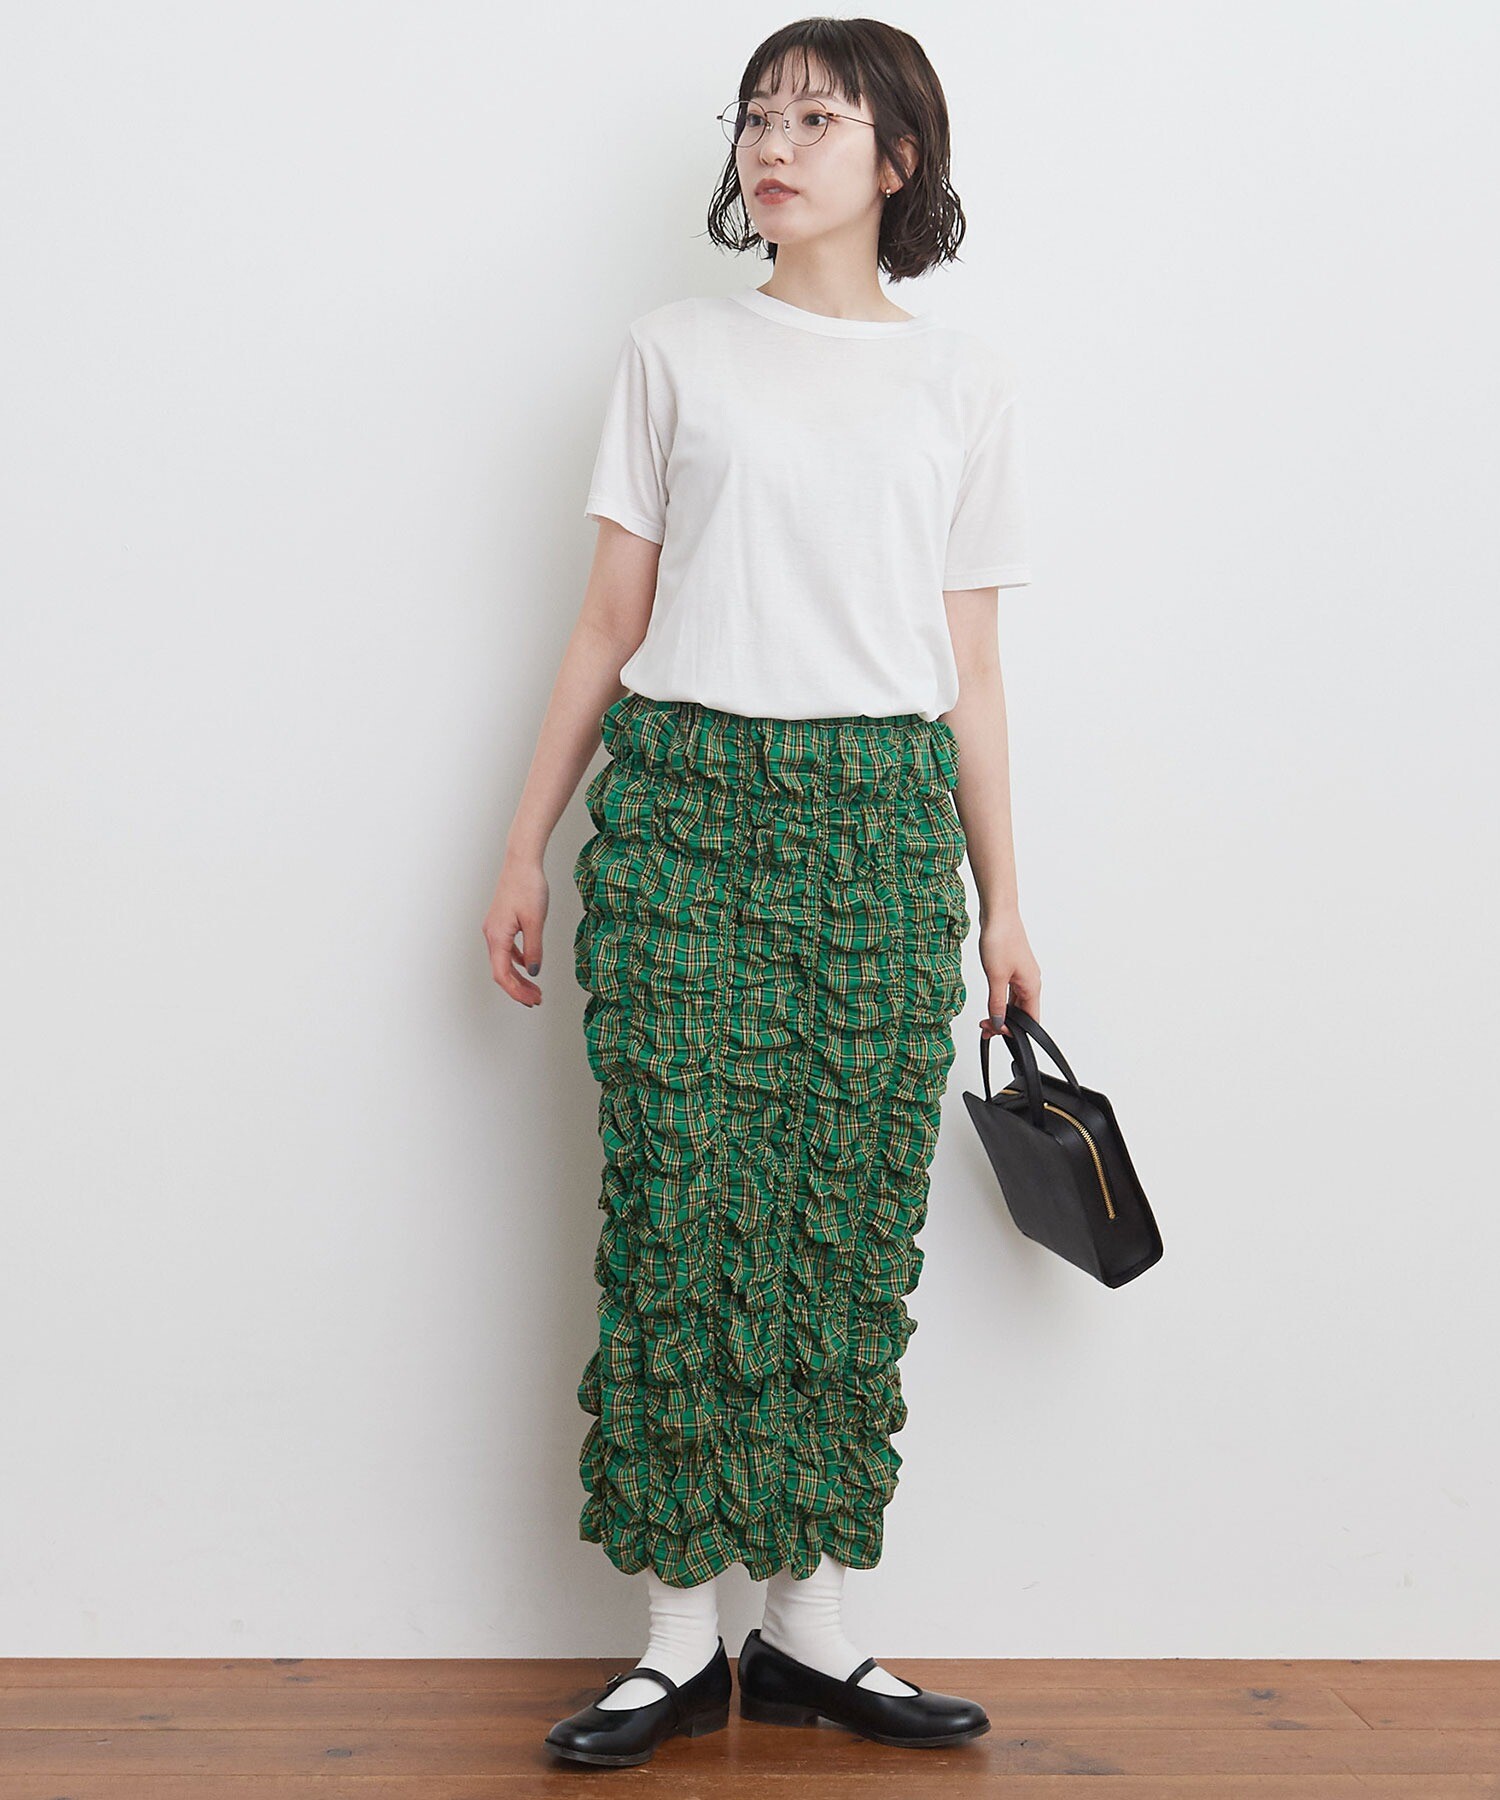 AMBIDEX Store 【予約販売】○uneven skirt(F アカ): l'atelier du savon